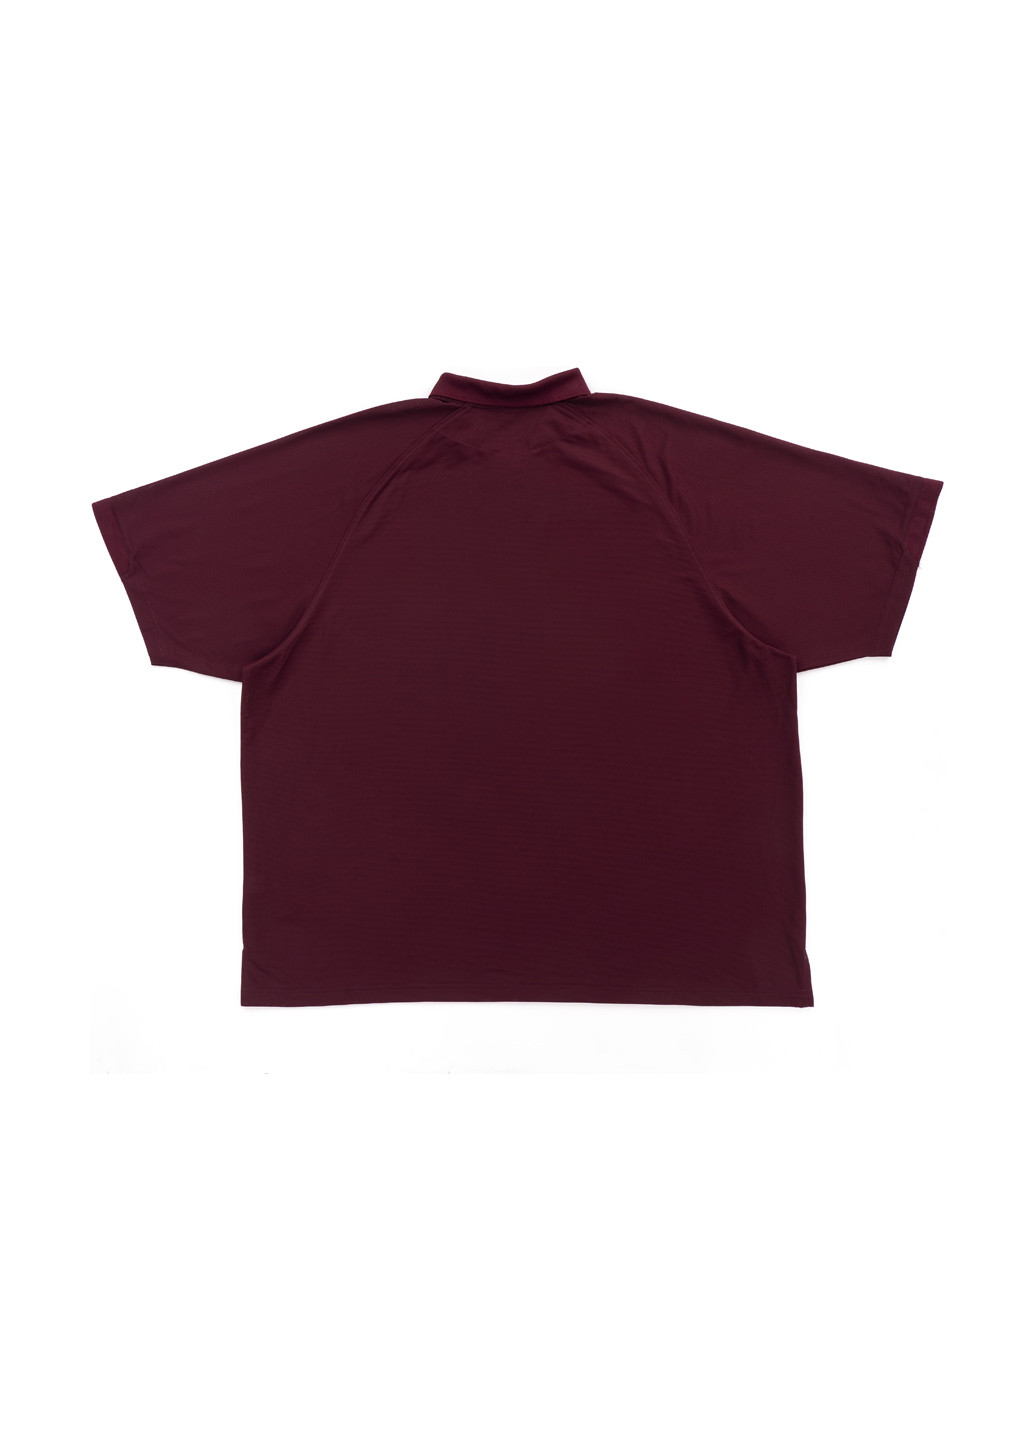 Бордовая футболка-поло для мужчин Port Authority однотонная